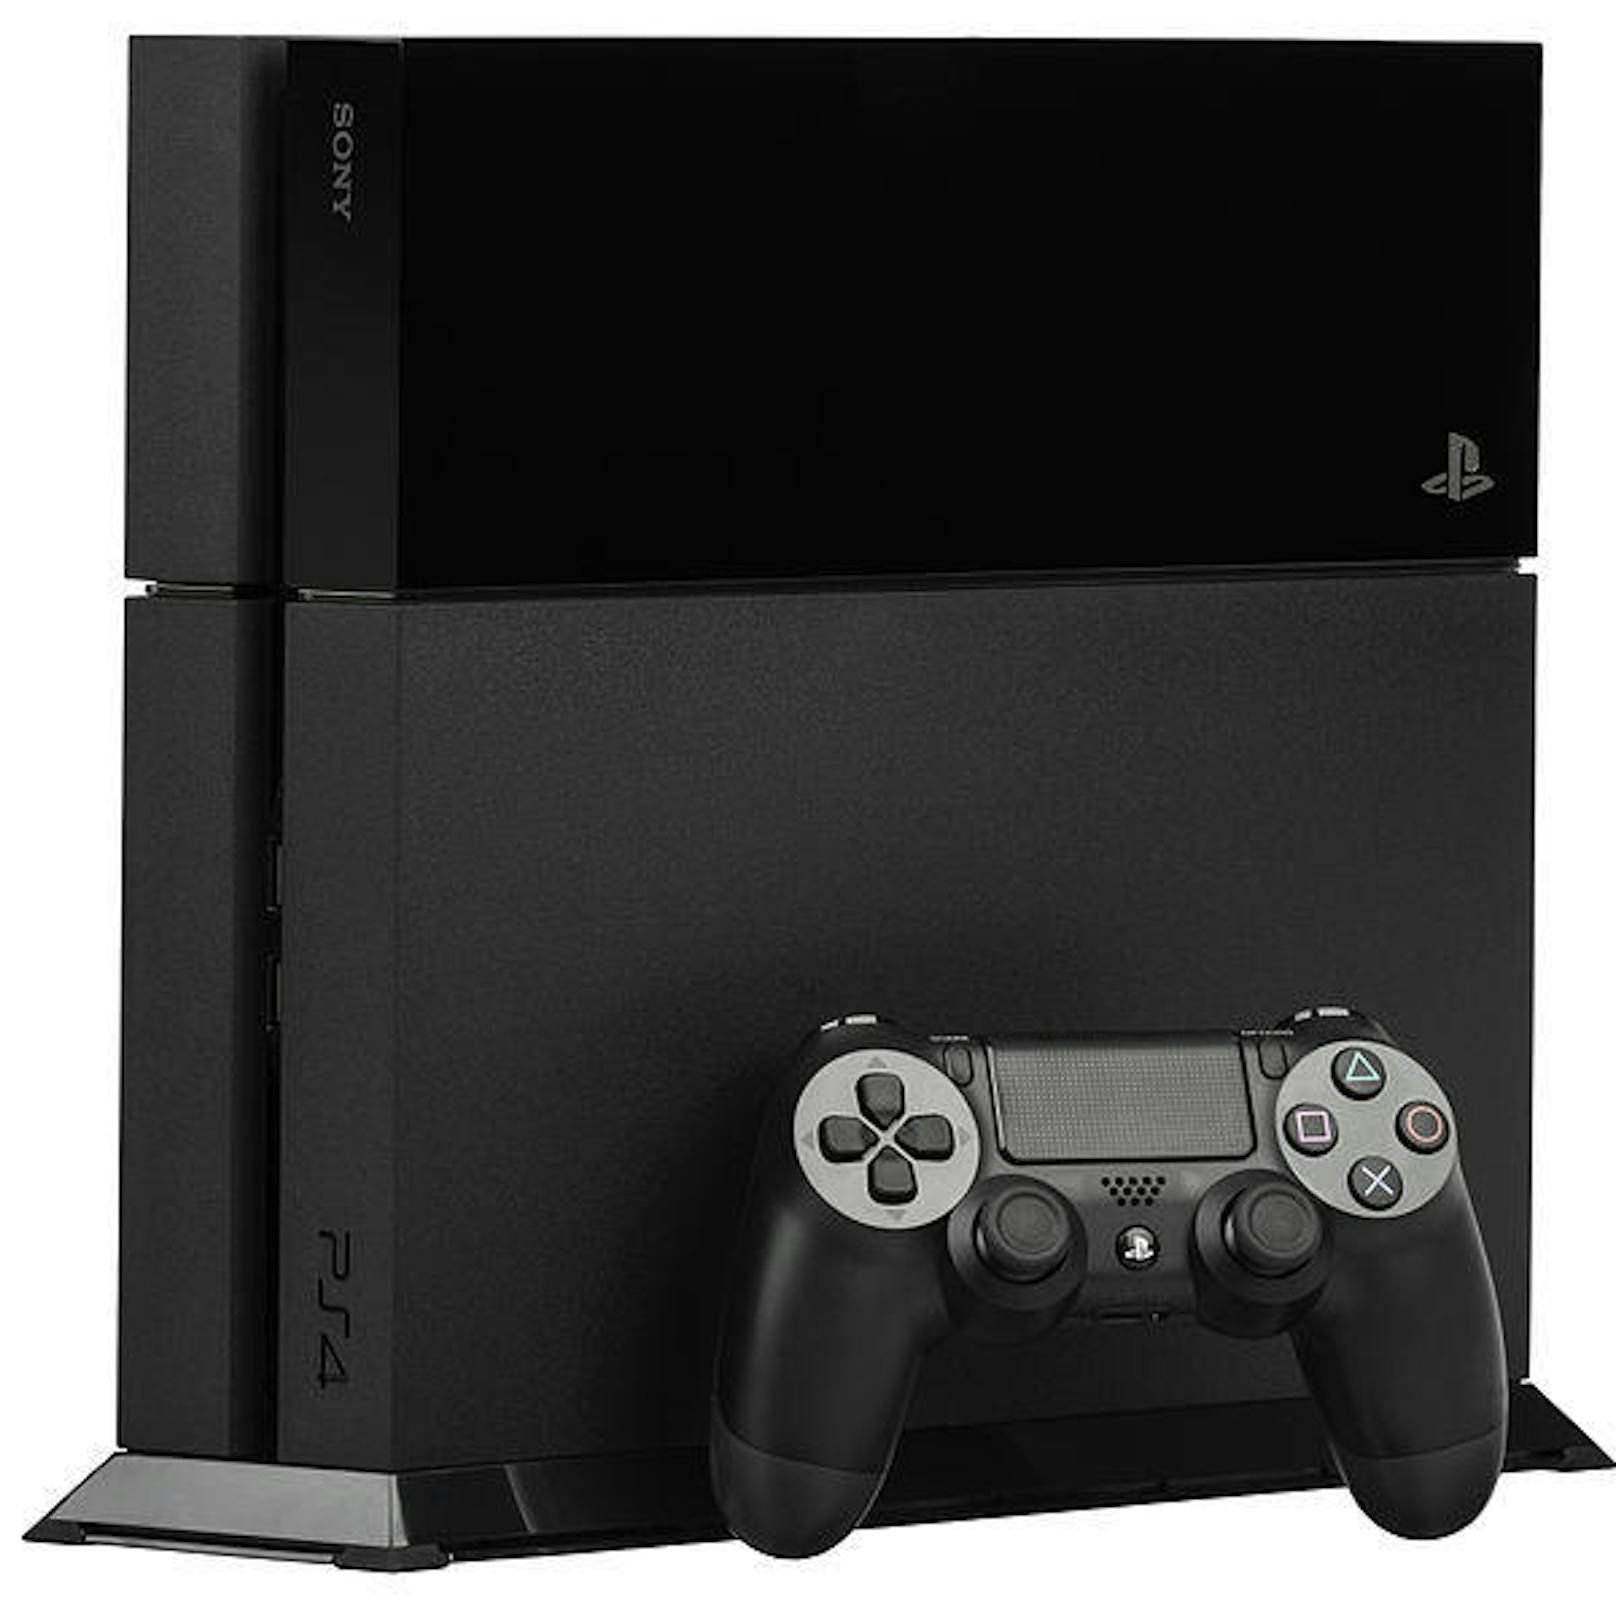 Die PlayStation 4 wurde sowohl von der Fachpresse, als auch den Fans begeistert angenommen. Bis heute kitzeln Hersteller immer bessere Grafik aus dem System.